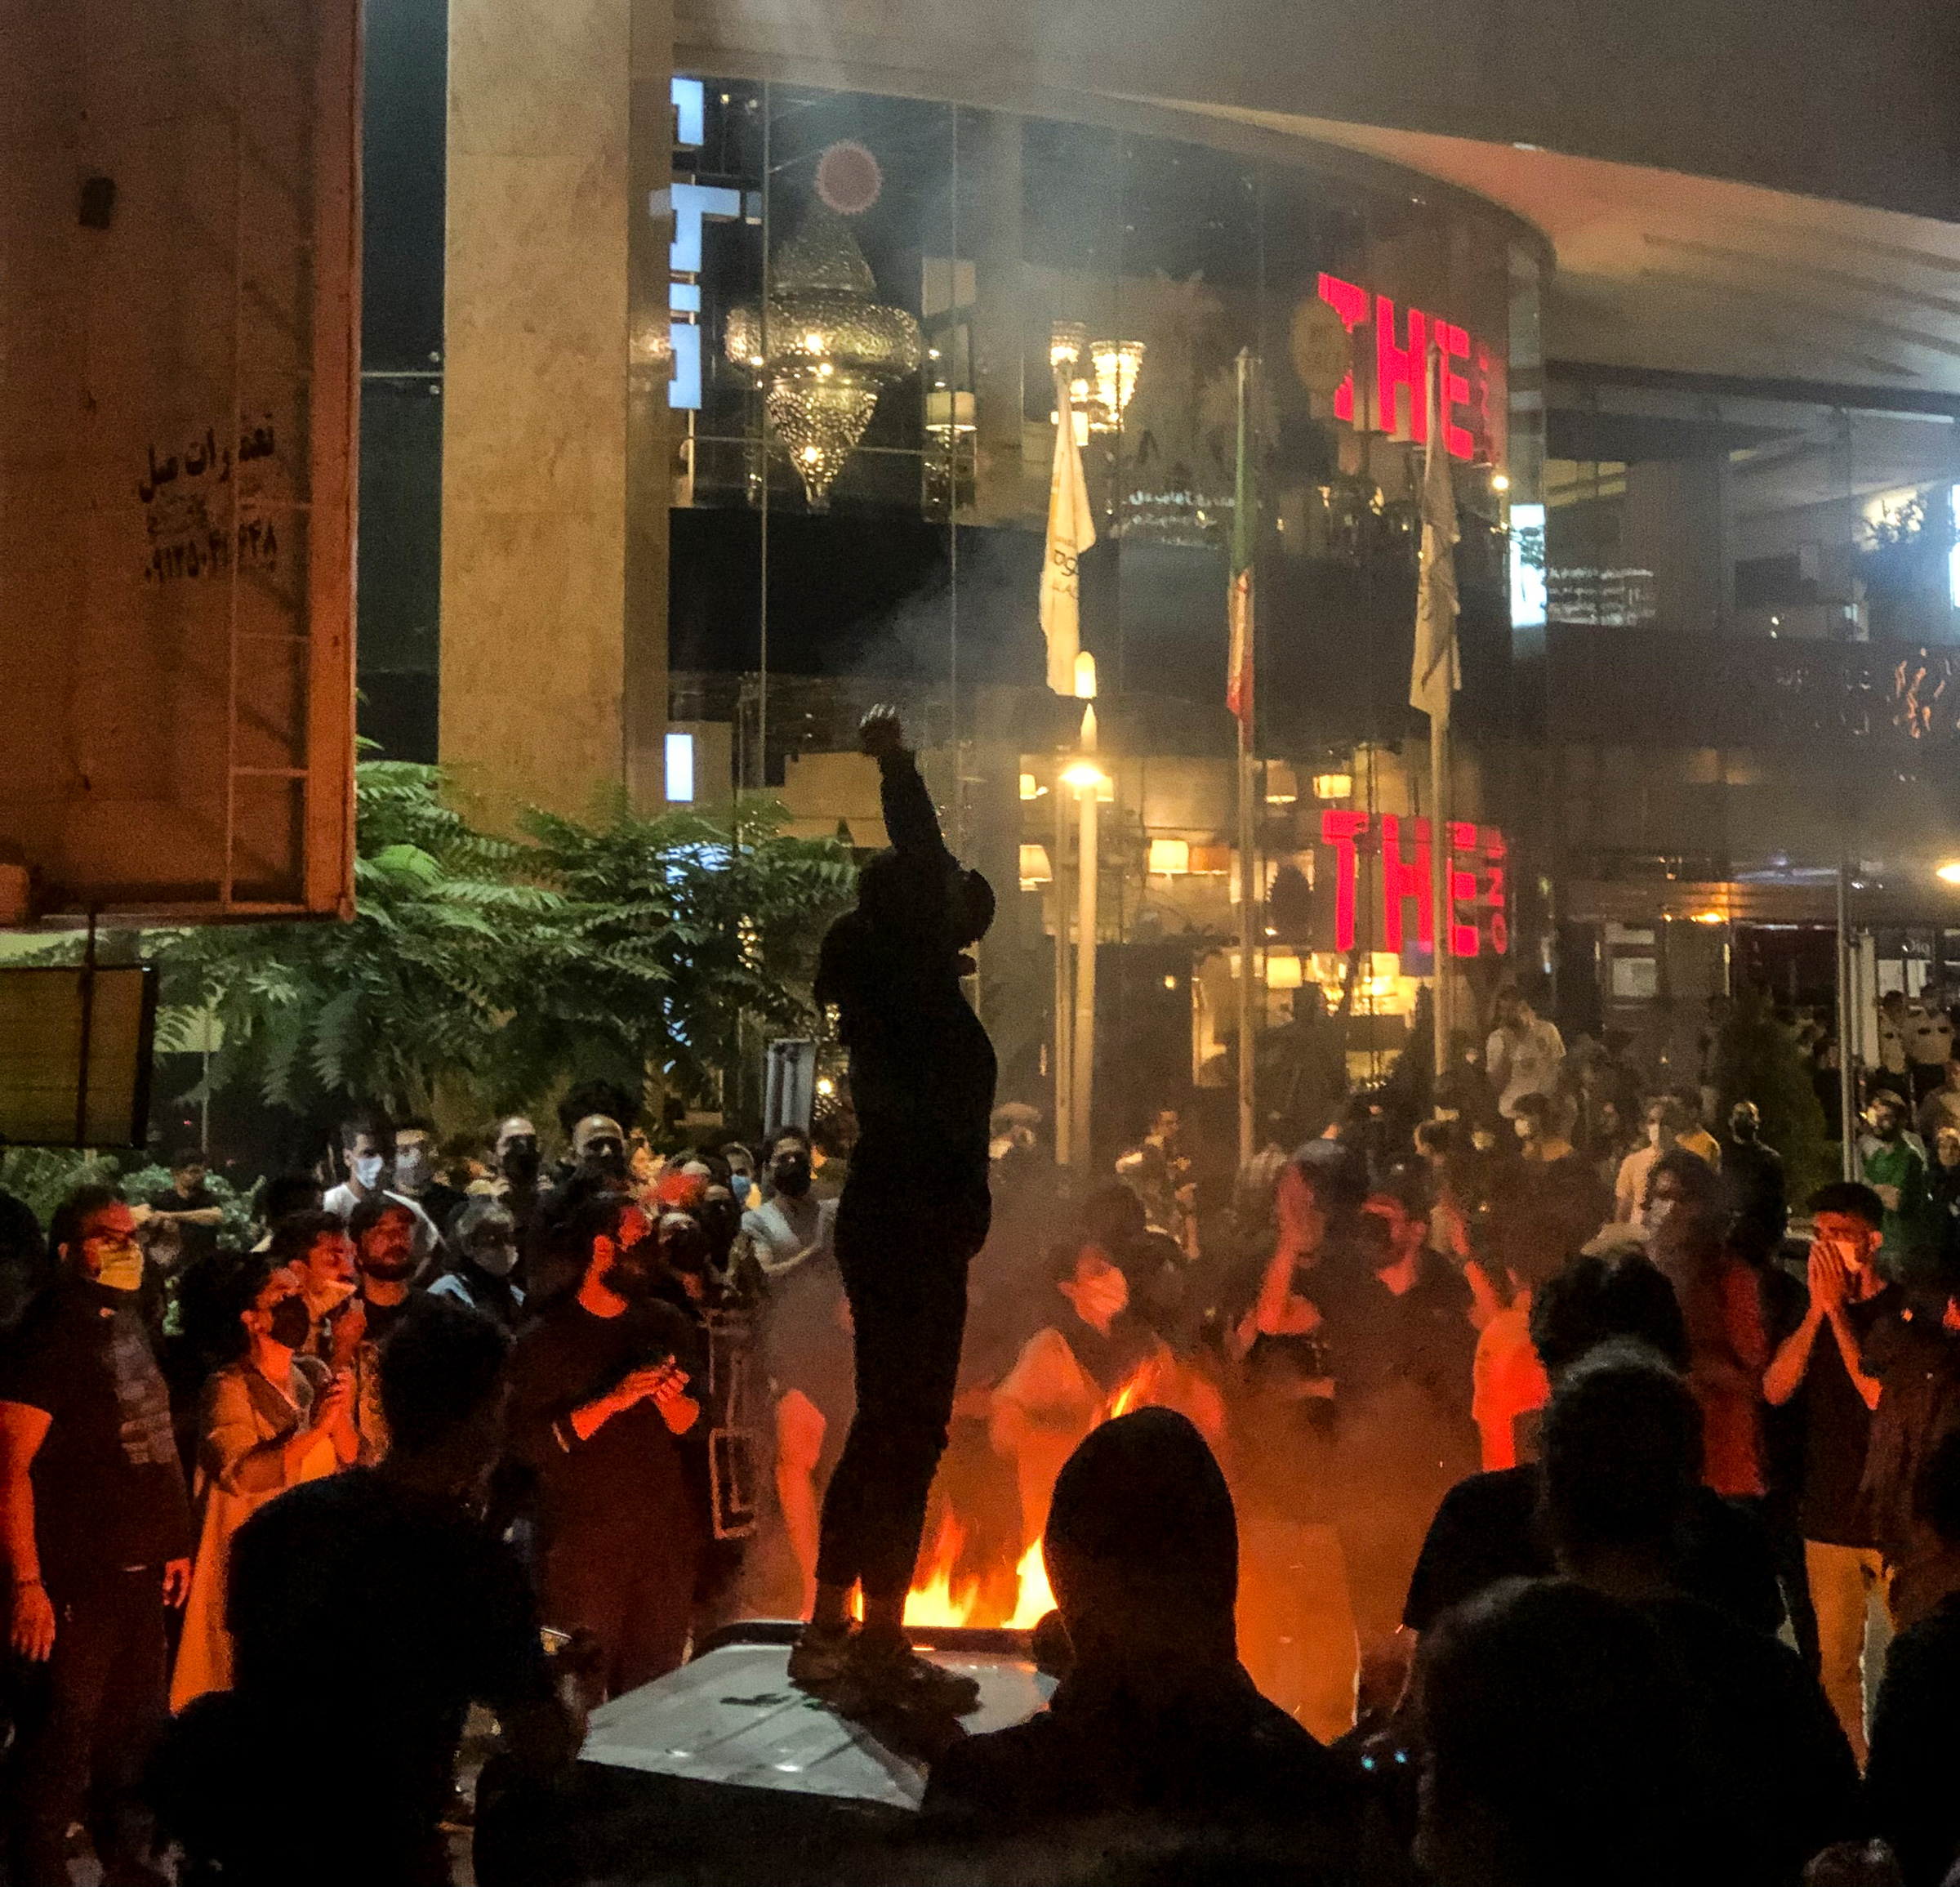 مردم در اعتراض به مهسا امینی در تهران تجمع کردند.  22. (ایران وایر / تصاویر خاورمیانه / ردوکس)